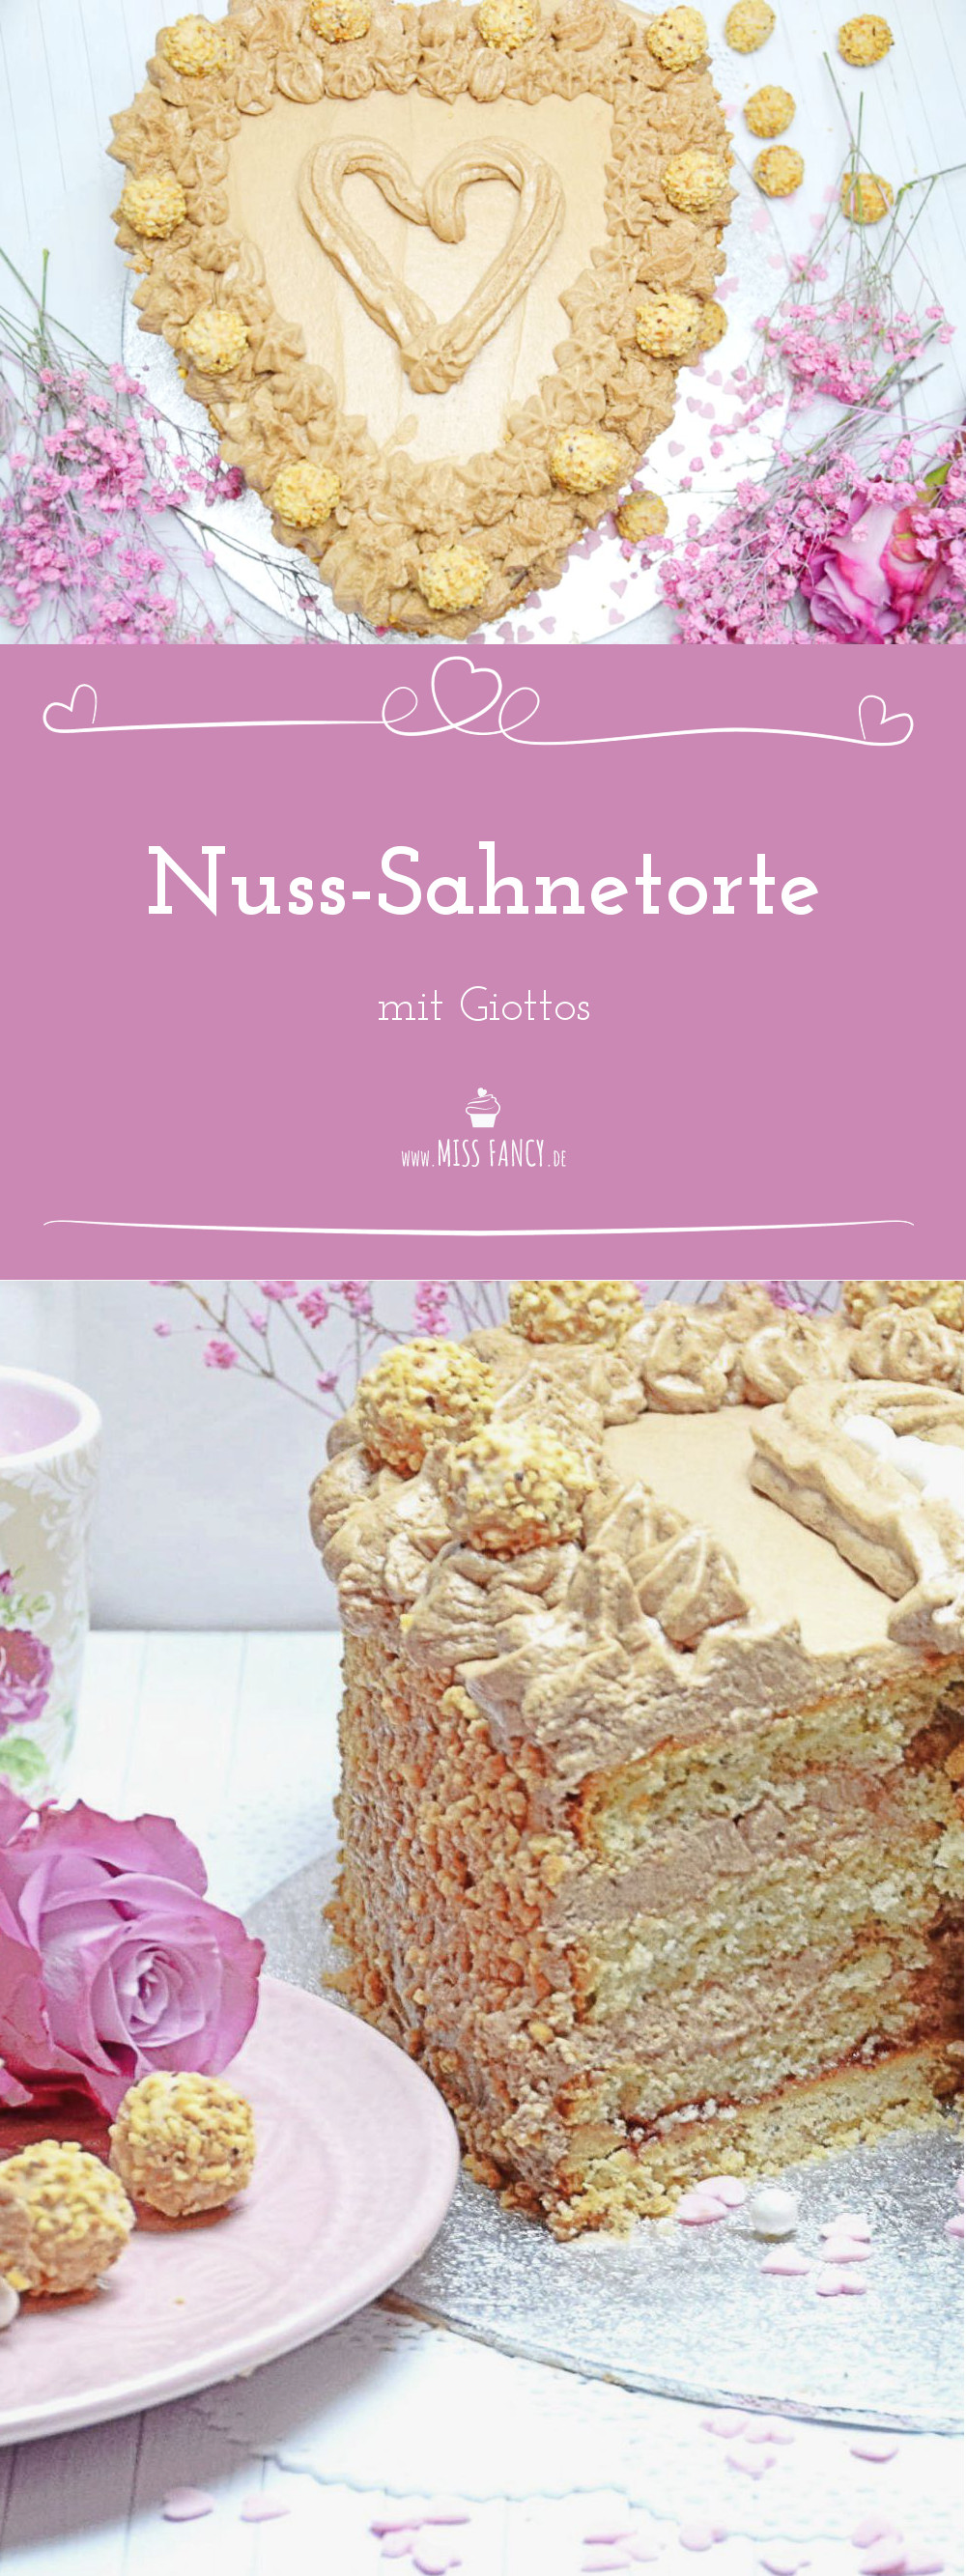 Nuss-Sahne-Torte mit Giottos